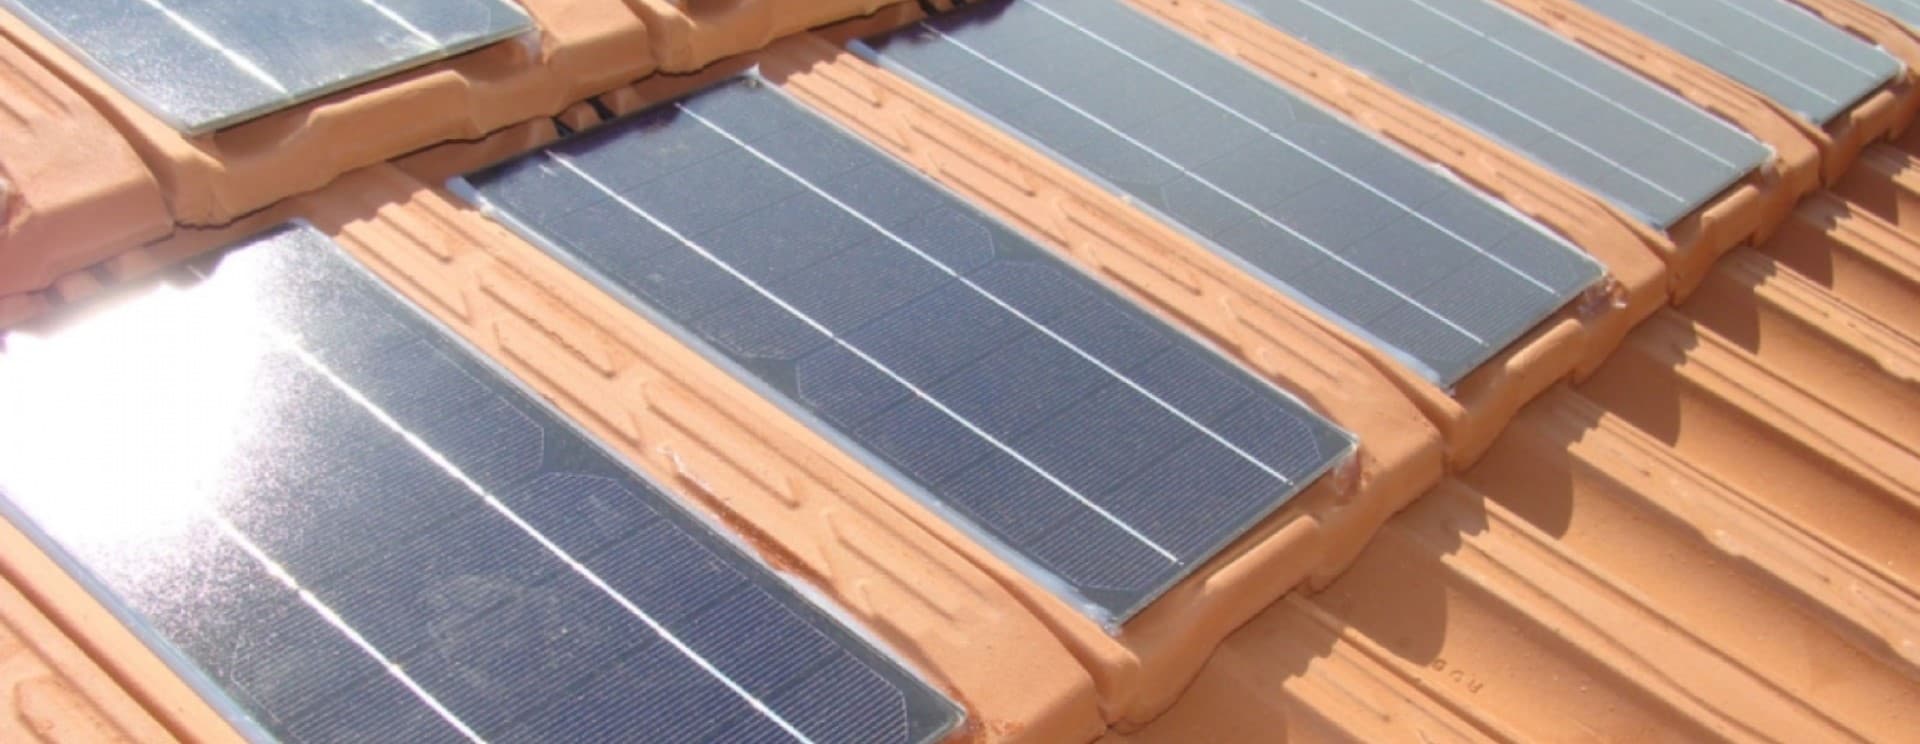 tejado solar con placas solares